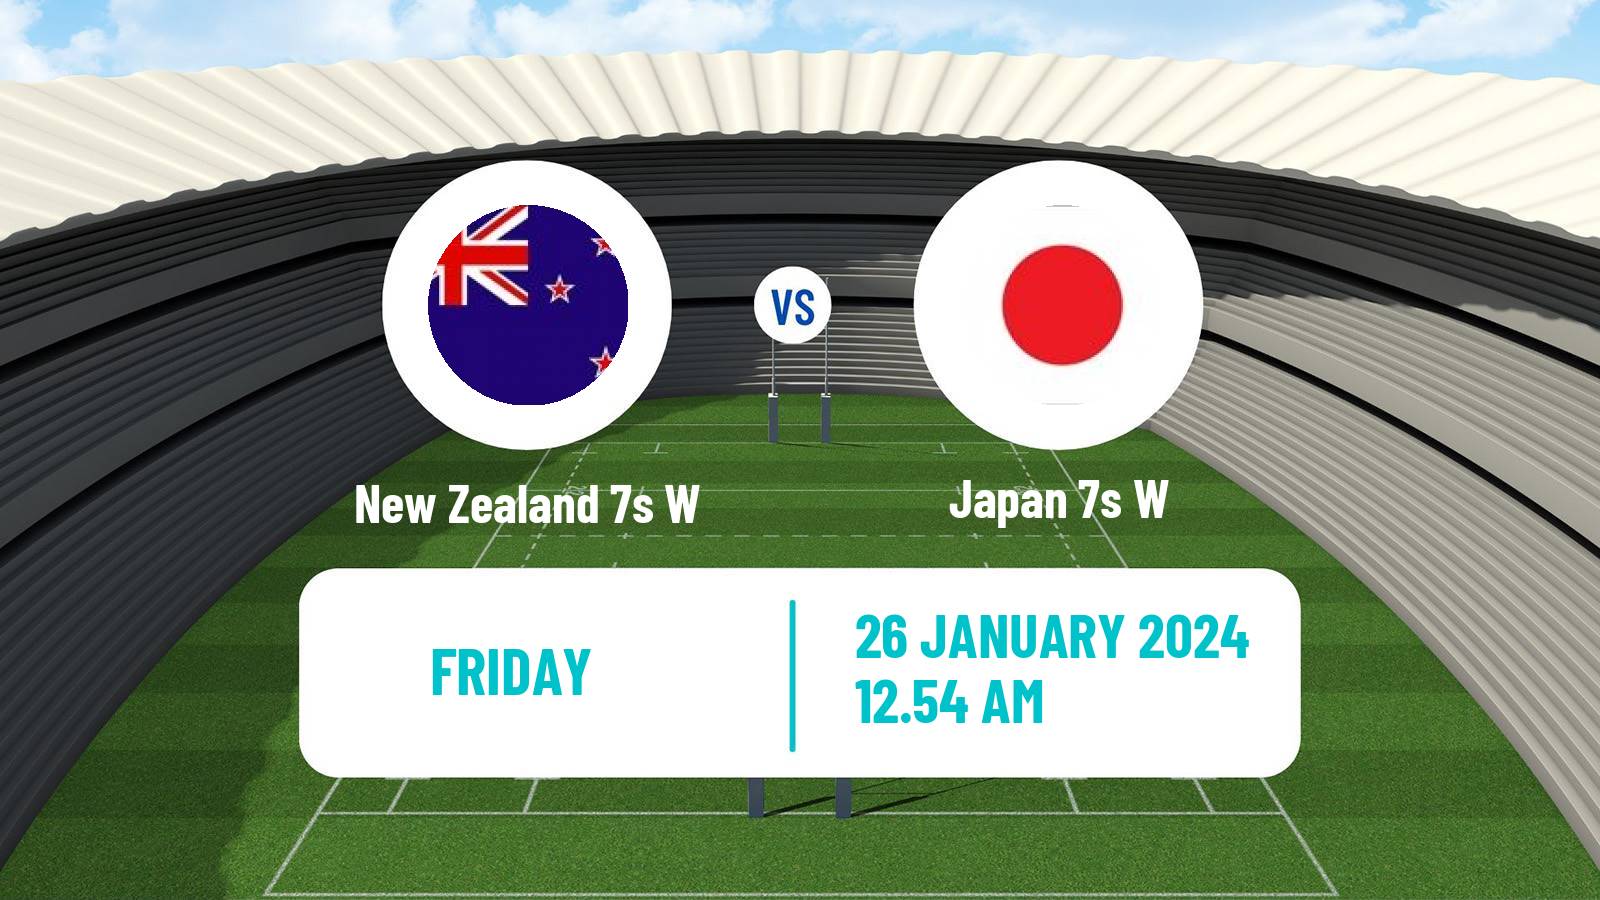 Rugby union Sevens World Series Women - Australia New Zealand 7s W - Japan 7s W